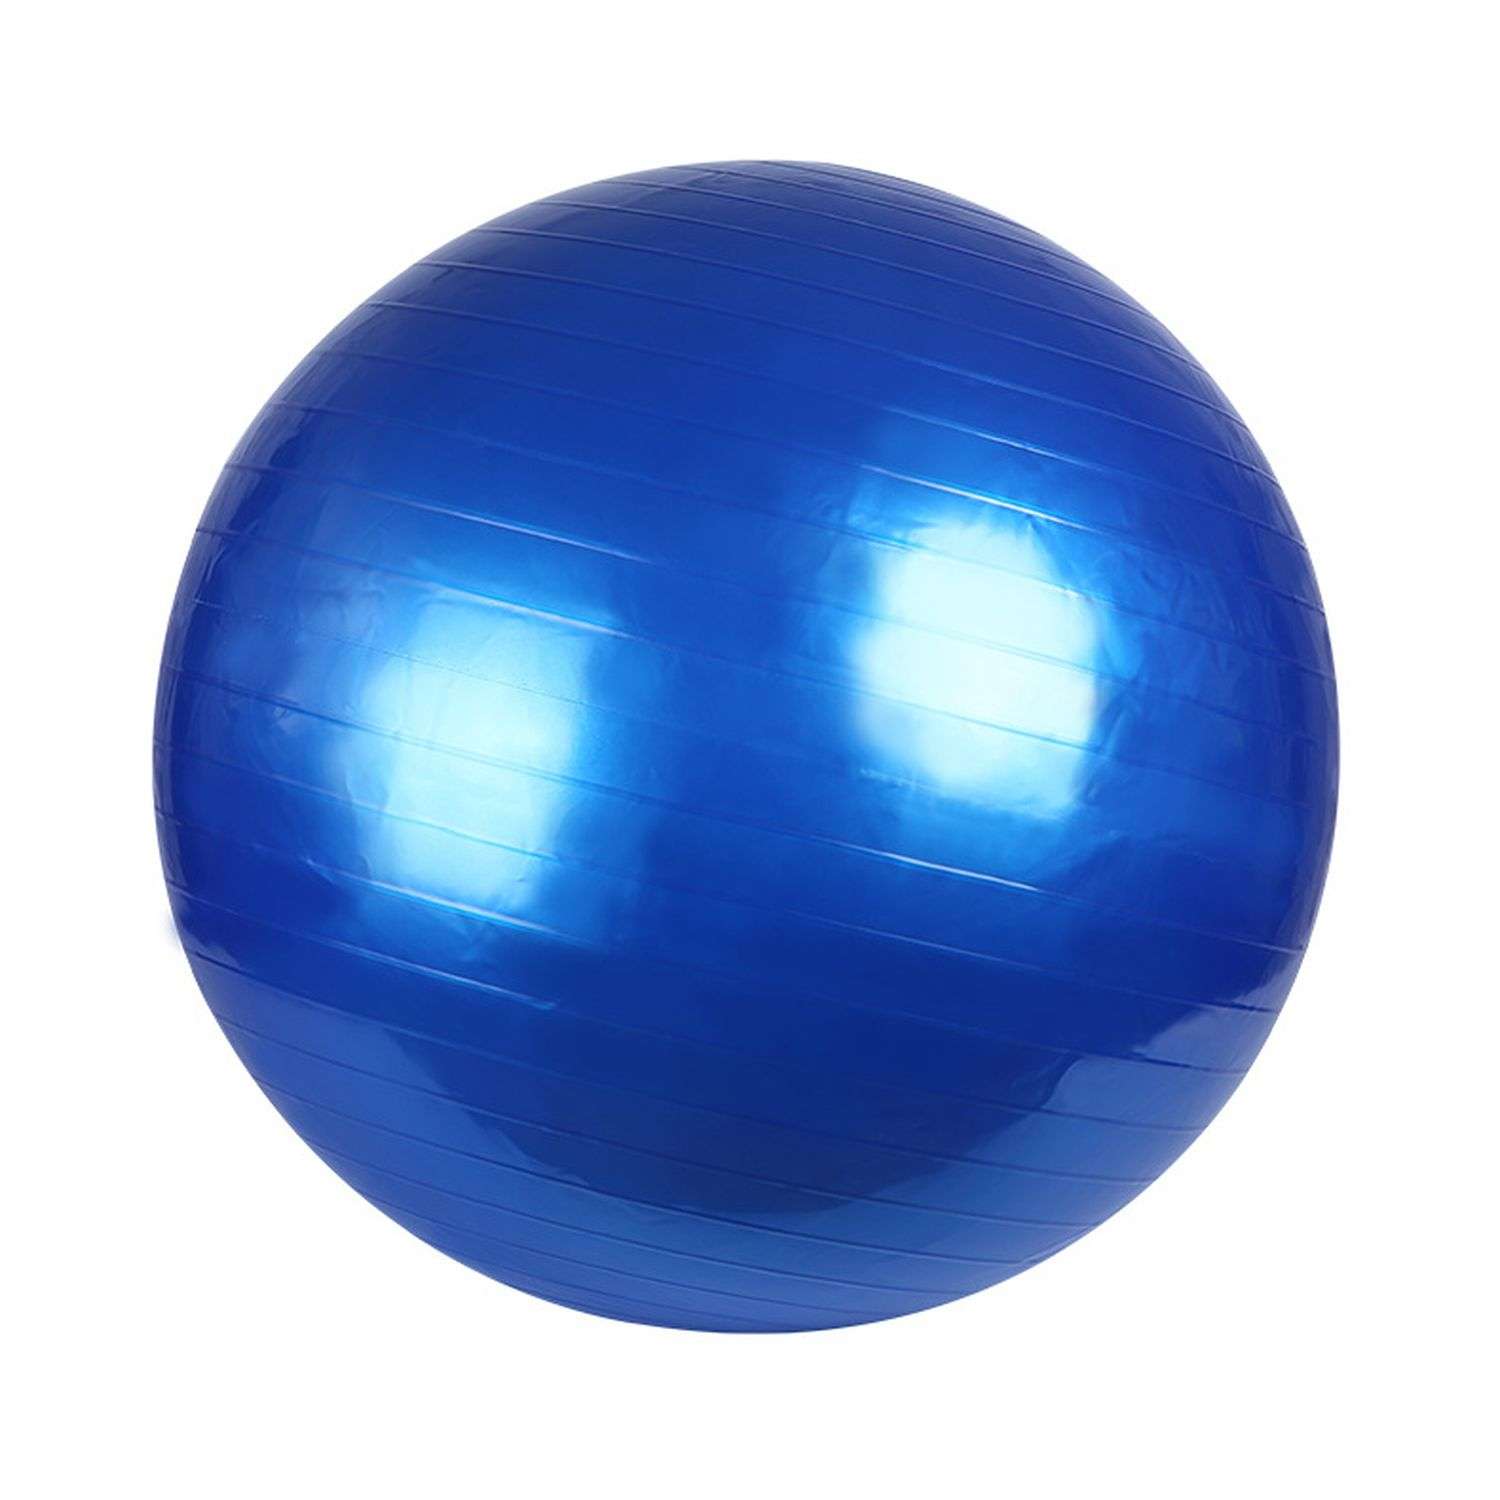 Фитбол Beroma с антивзрывным эффектом 55 см синий - фото 1